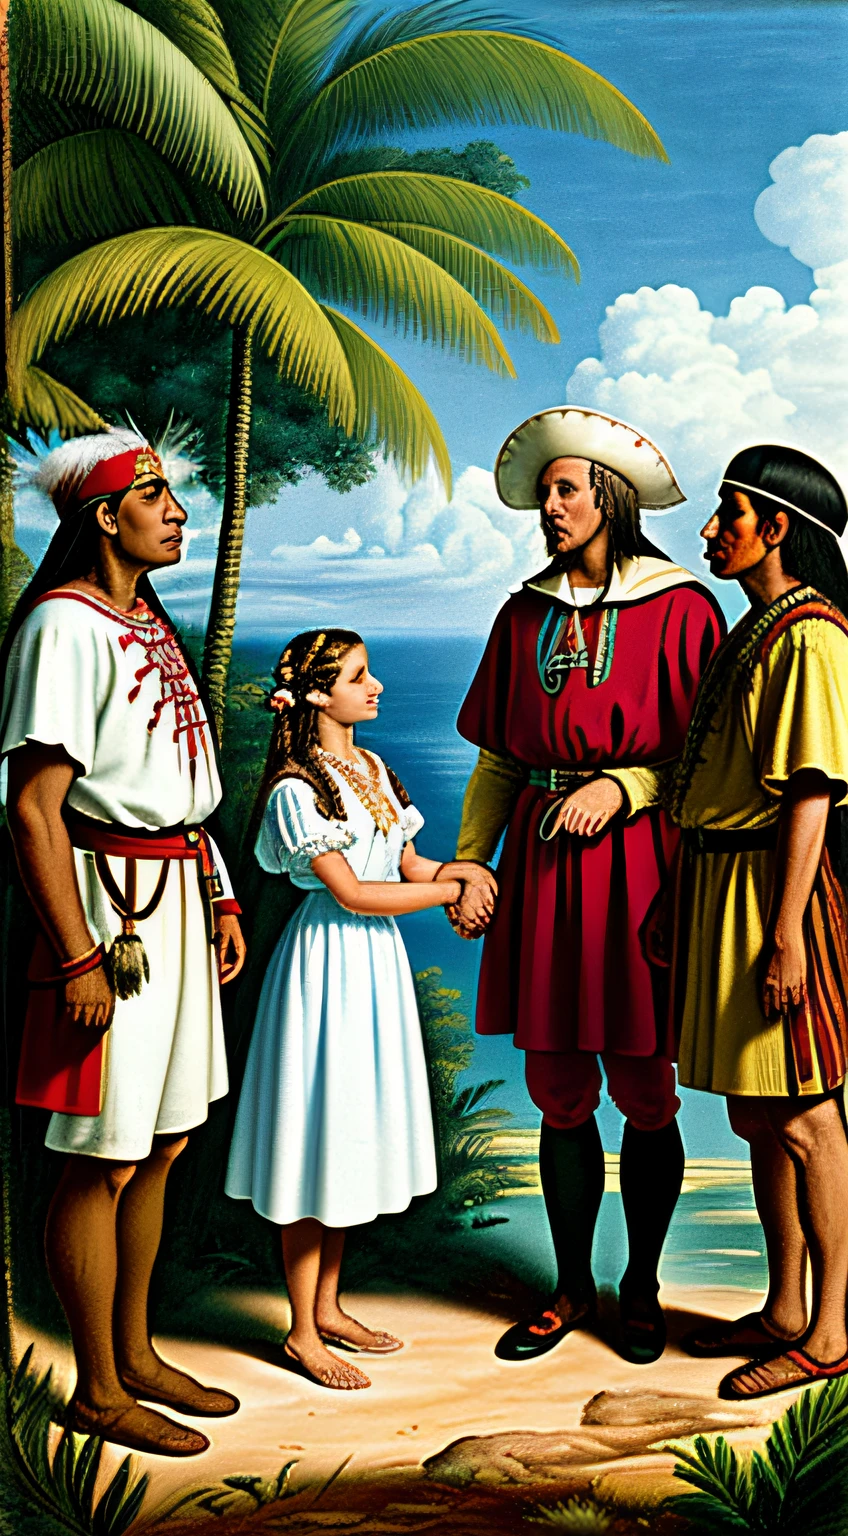 Cena histórica de Cristóvão Colombo em traje de explorador, conhecendo nativos americanos vestidos com roupas tradicionais, em uma exuberante paisagem caribenha, curiosidade e respeito mútuos, estilo fotorrealista.